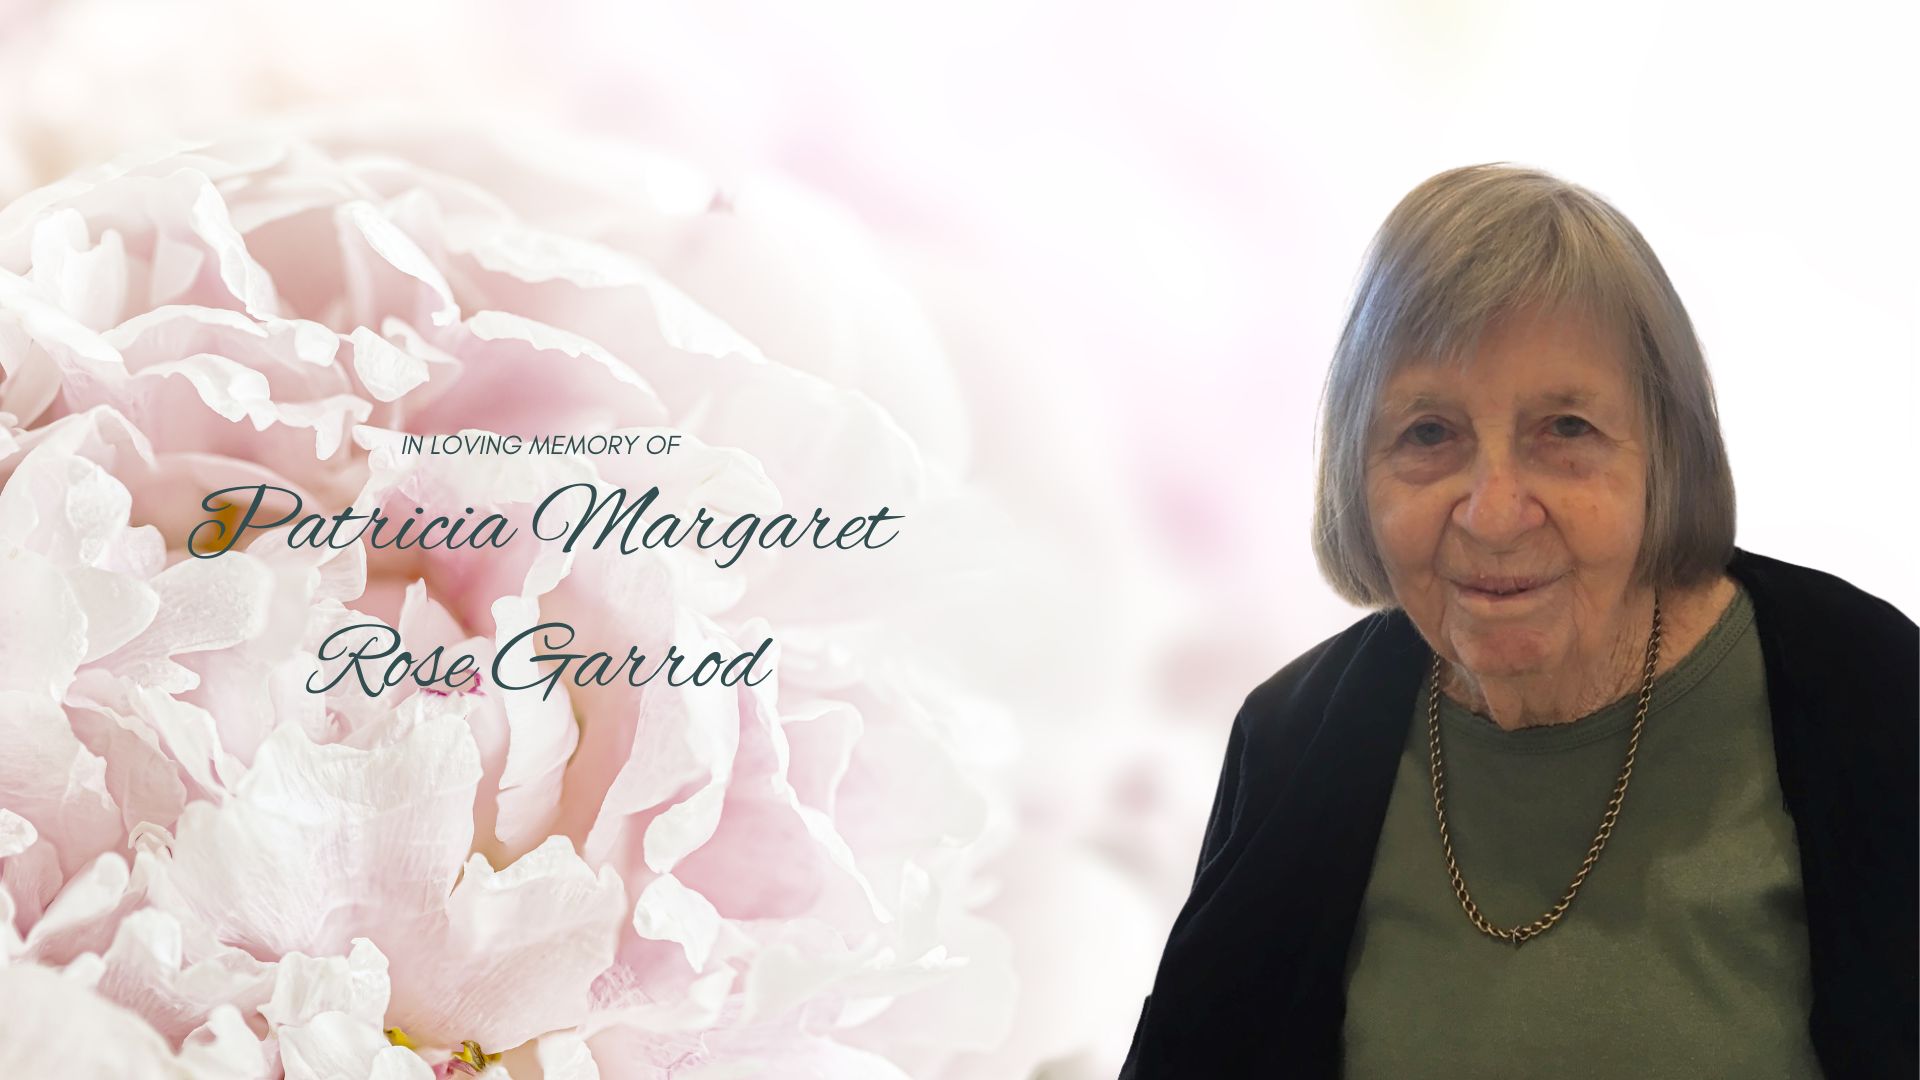 Patricia Margaret Rose Garrod